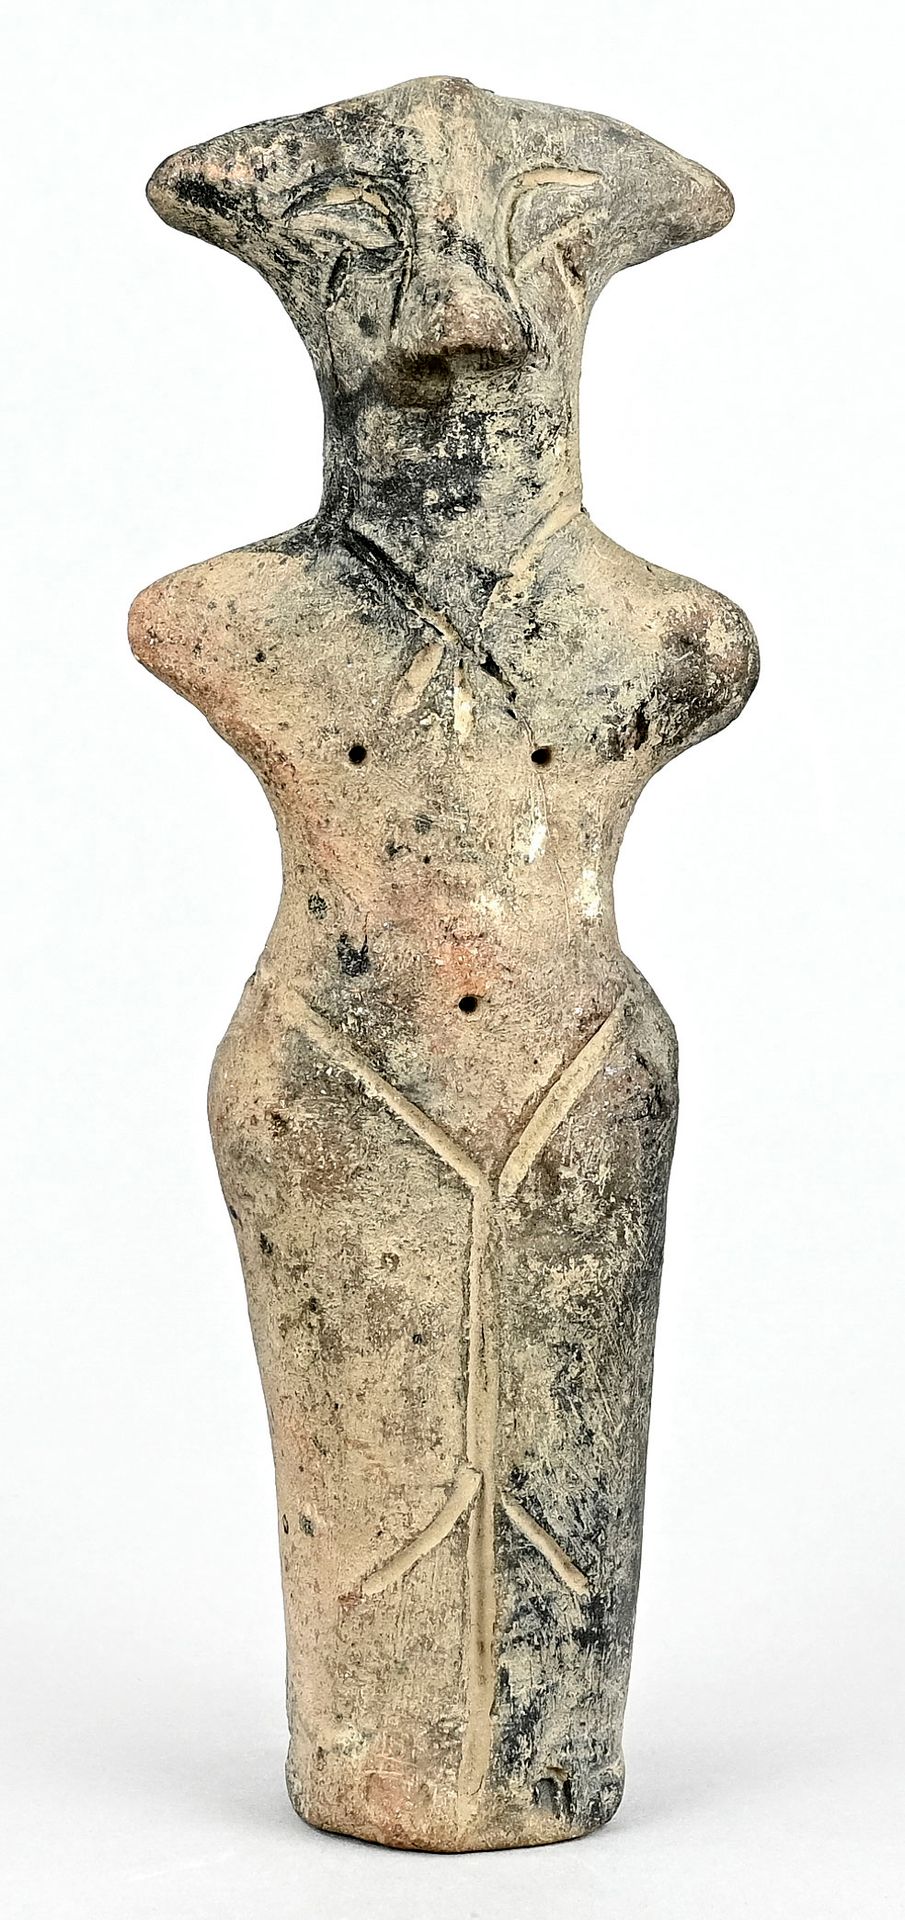 Null 女性神像，赤土，手臂残缺，眼睛被切开，侧耳尖，乳头和肚脐由钻孔表示。公元前2世纪上半叶，安纳托利亚，早期的女性雕像，烧制粘土，高21厘米